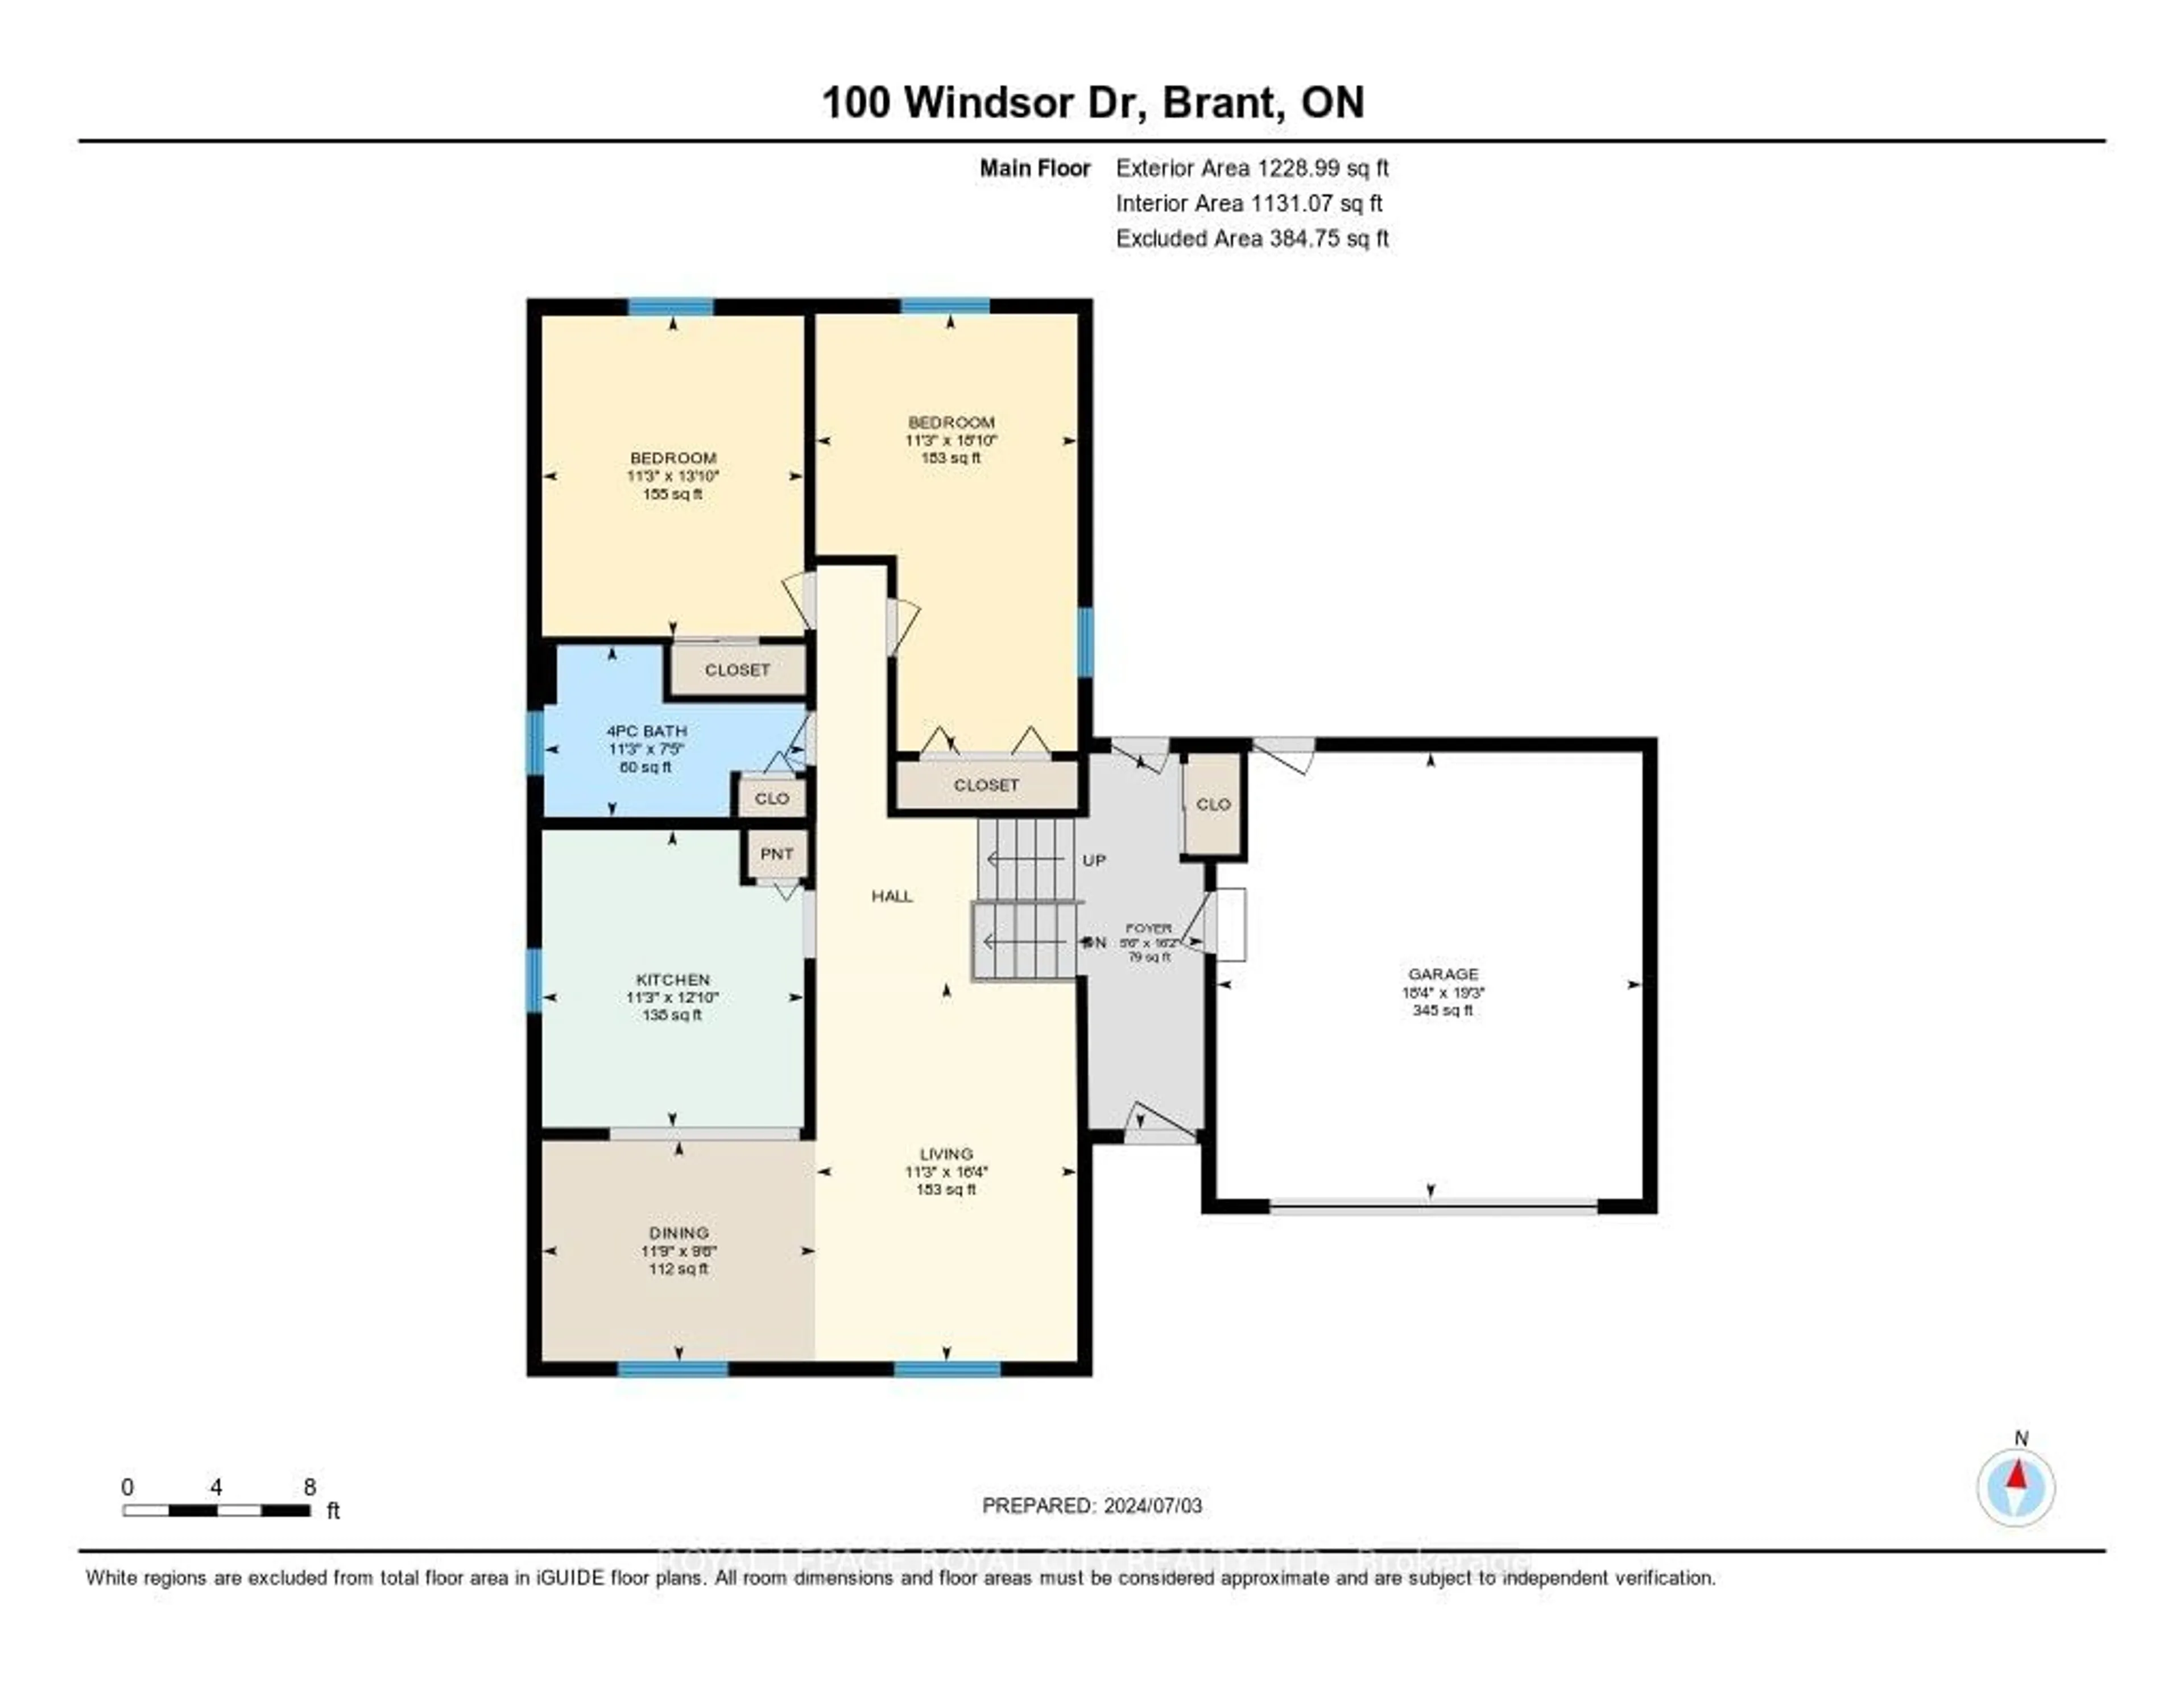 Floor plan for 100 Windsor Dr, Brant Ontario N0E 1N0